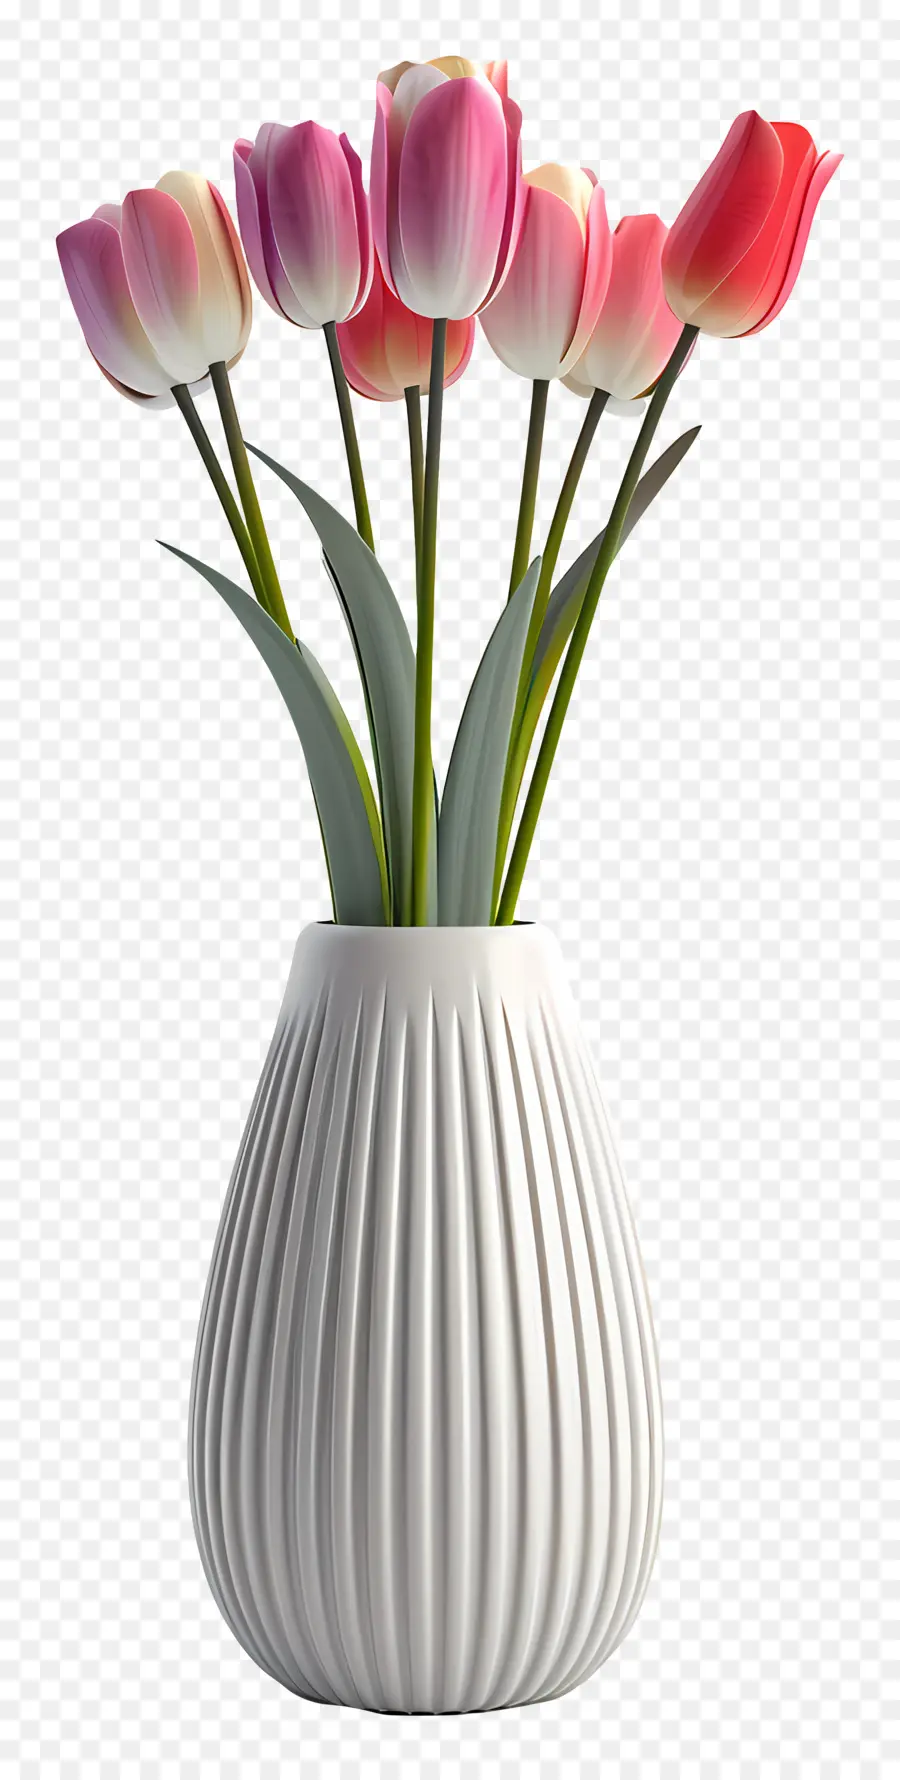 Gesteck - Weiße Vase mit rosa Tulpen, lässig Arrangement